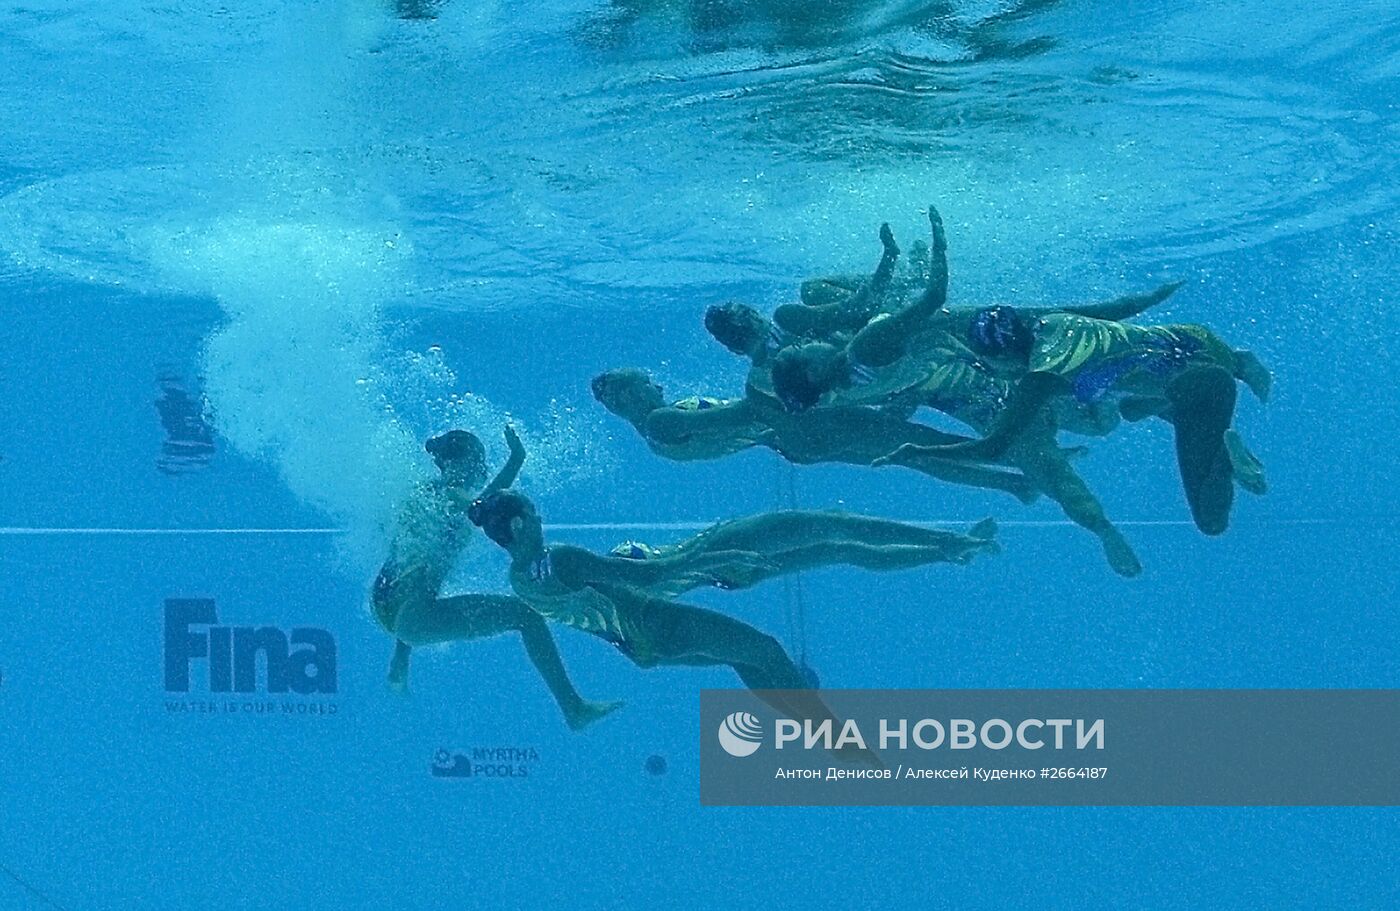 Чемпионат мира FINA 2015. Синхронное плавание. Группы. Техническая программа. Предварительный раунд